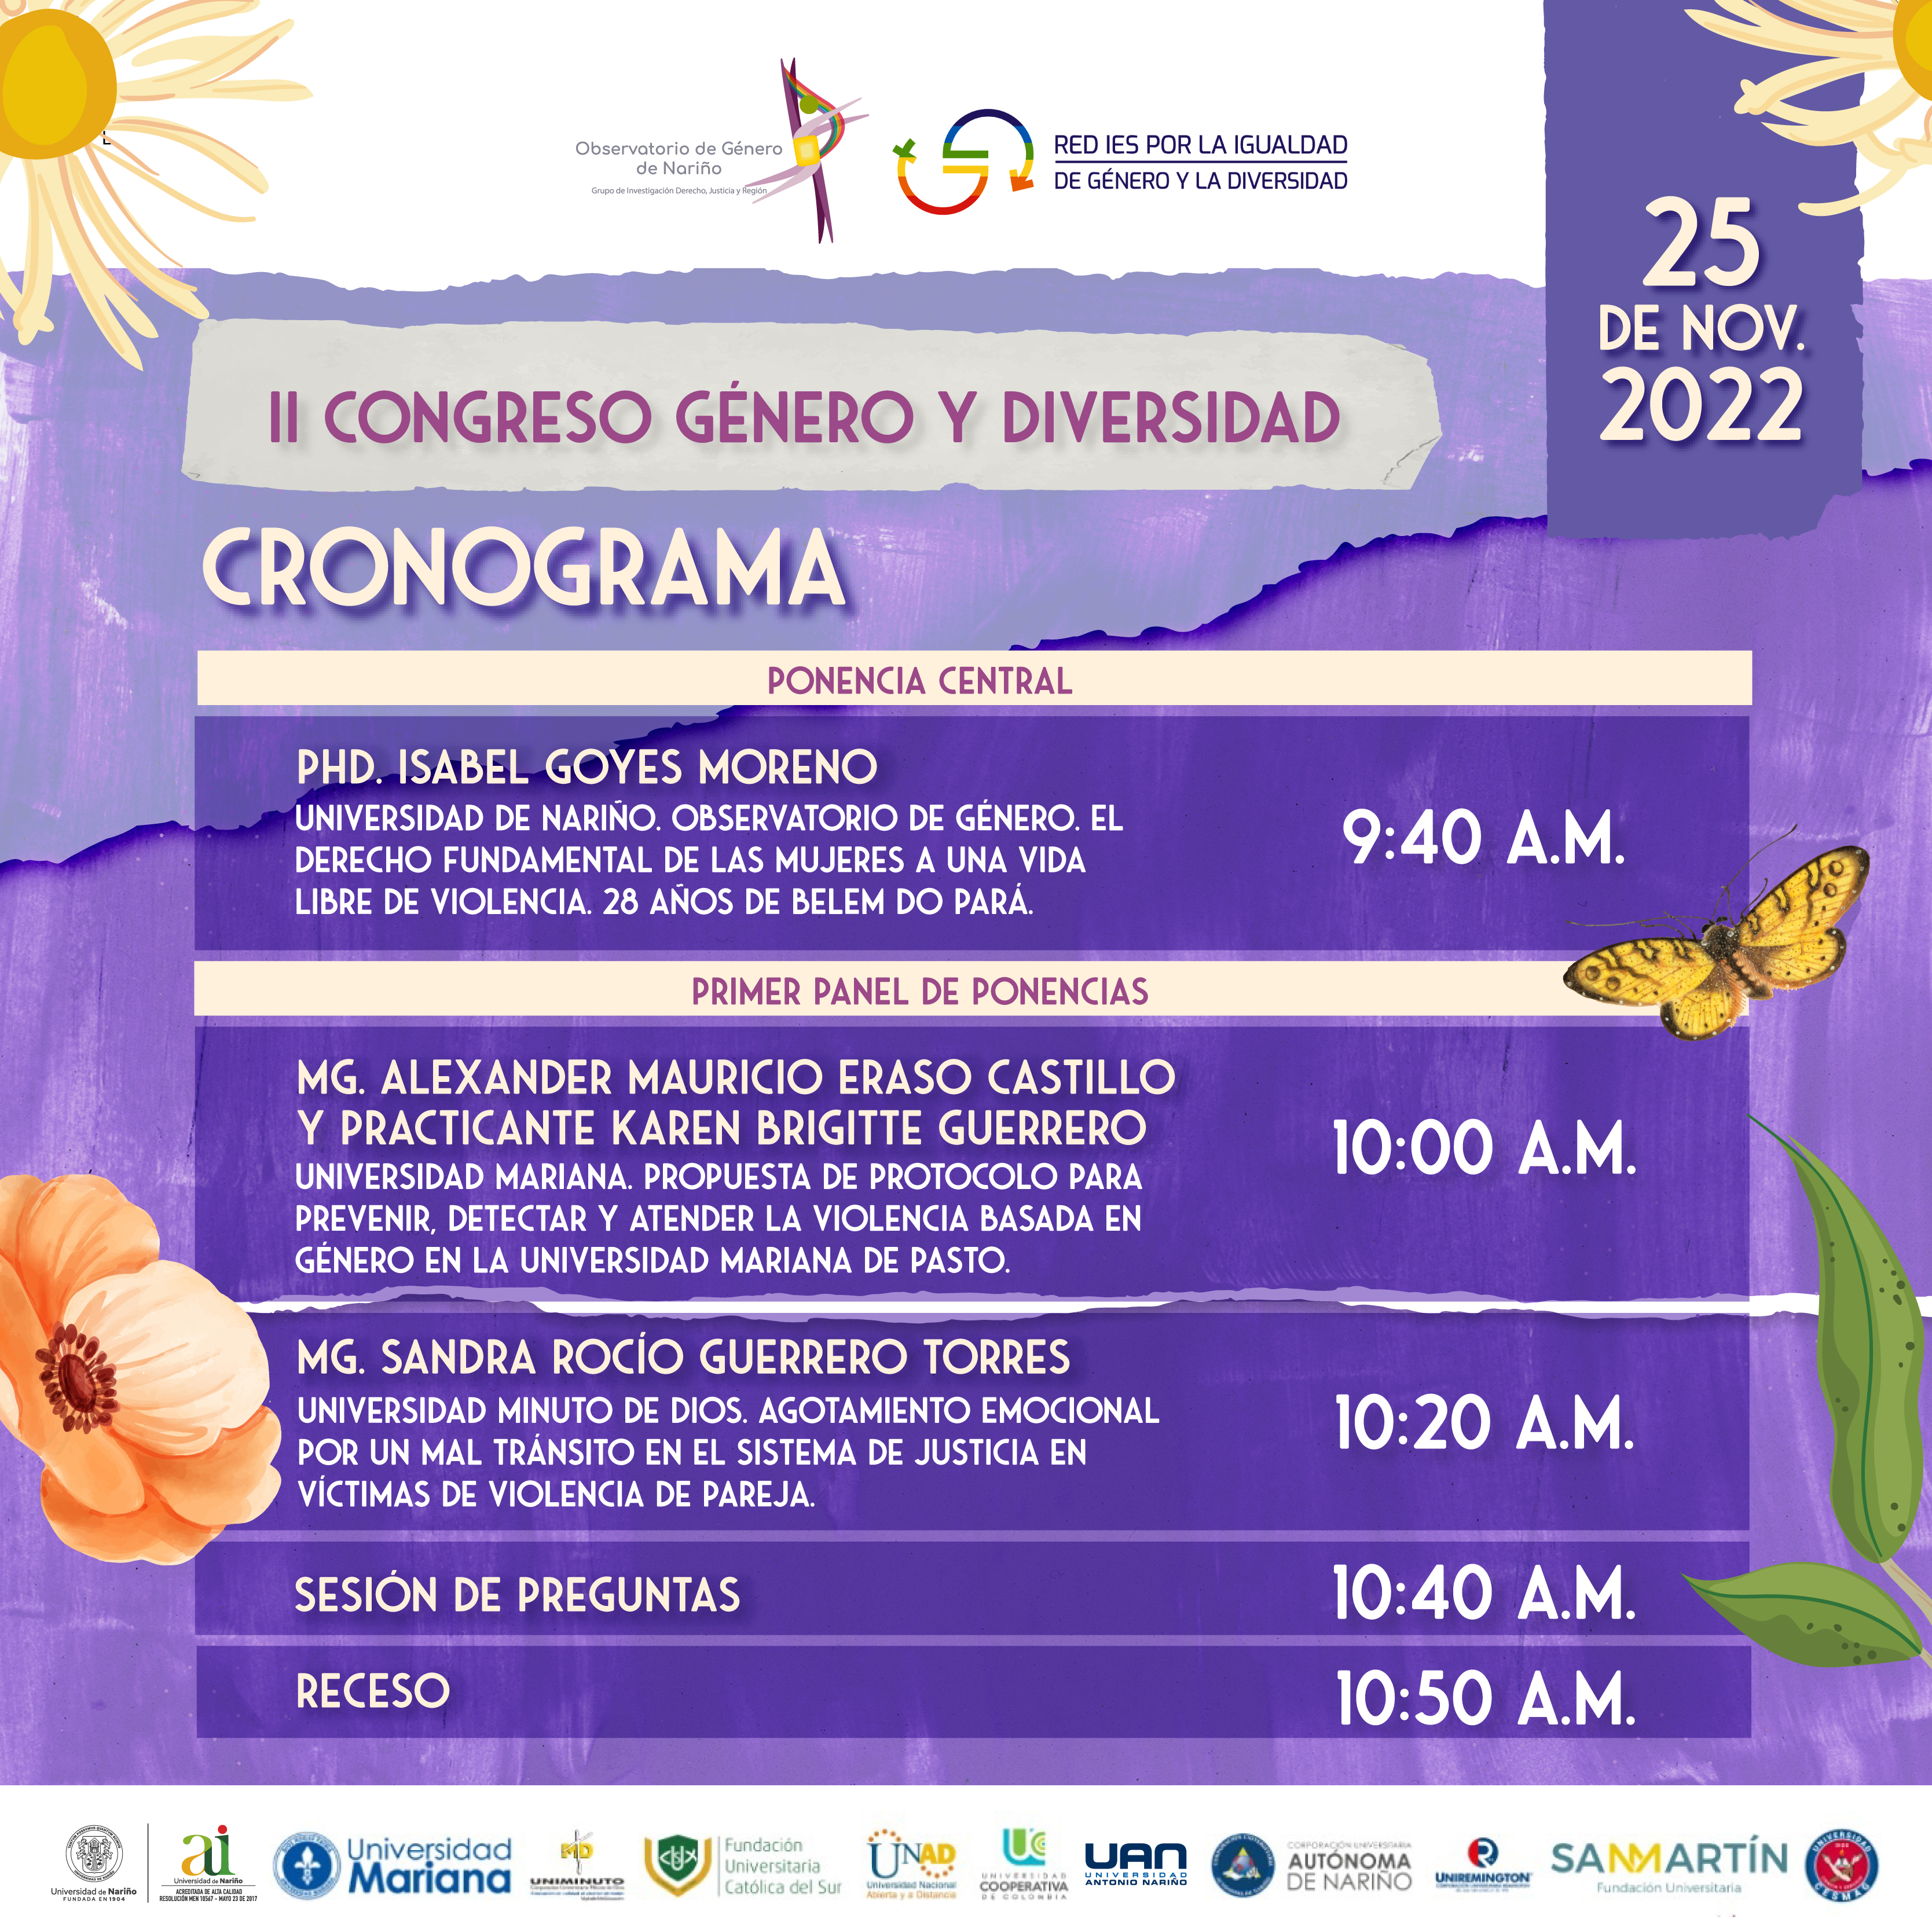 UDENAR-PERIODICO-II-Congreso-Genero-Diversidad-cronograma-2